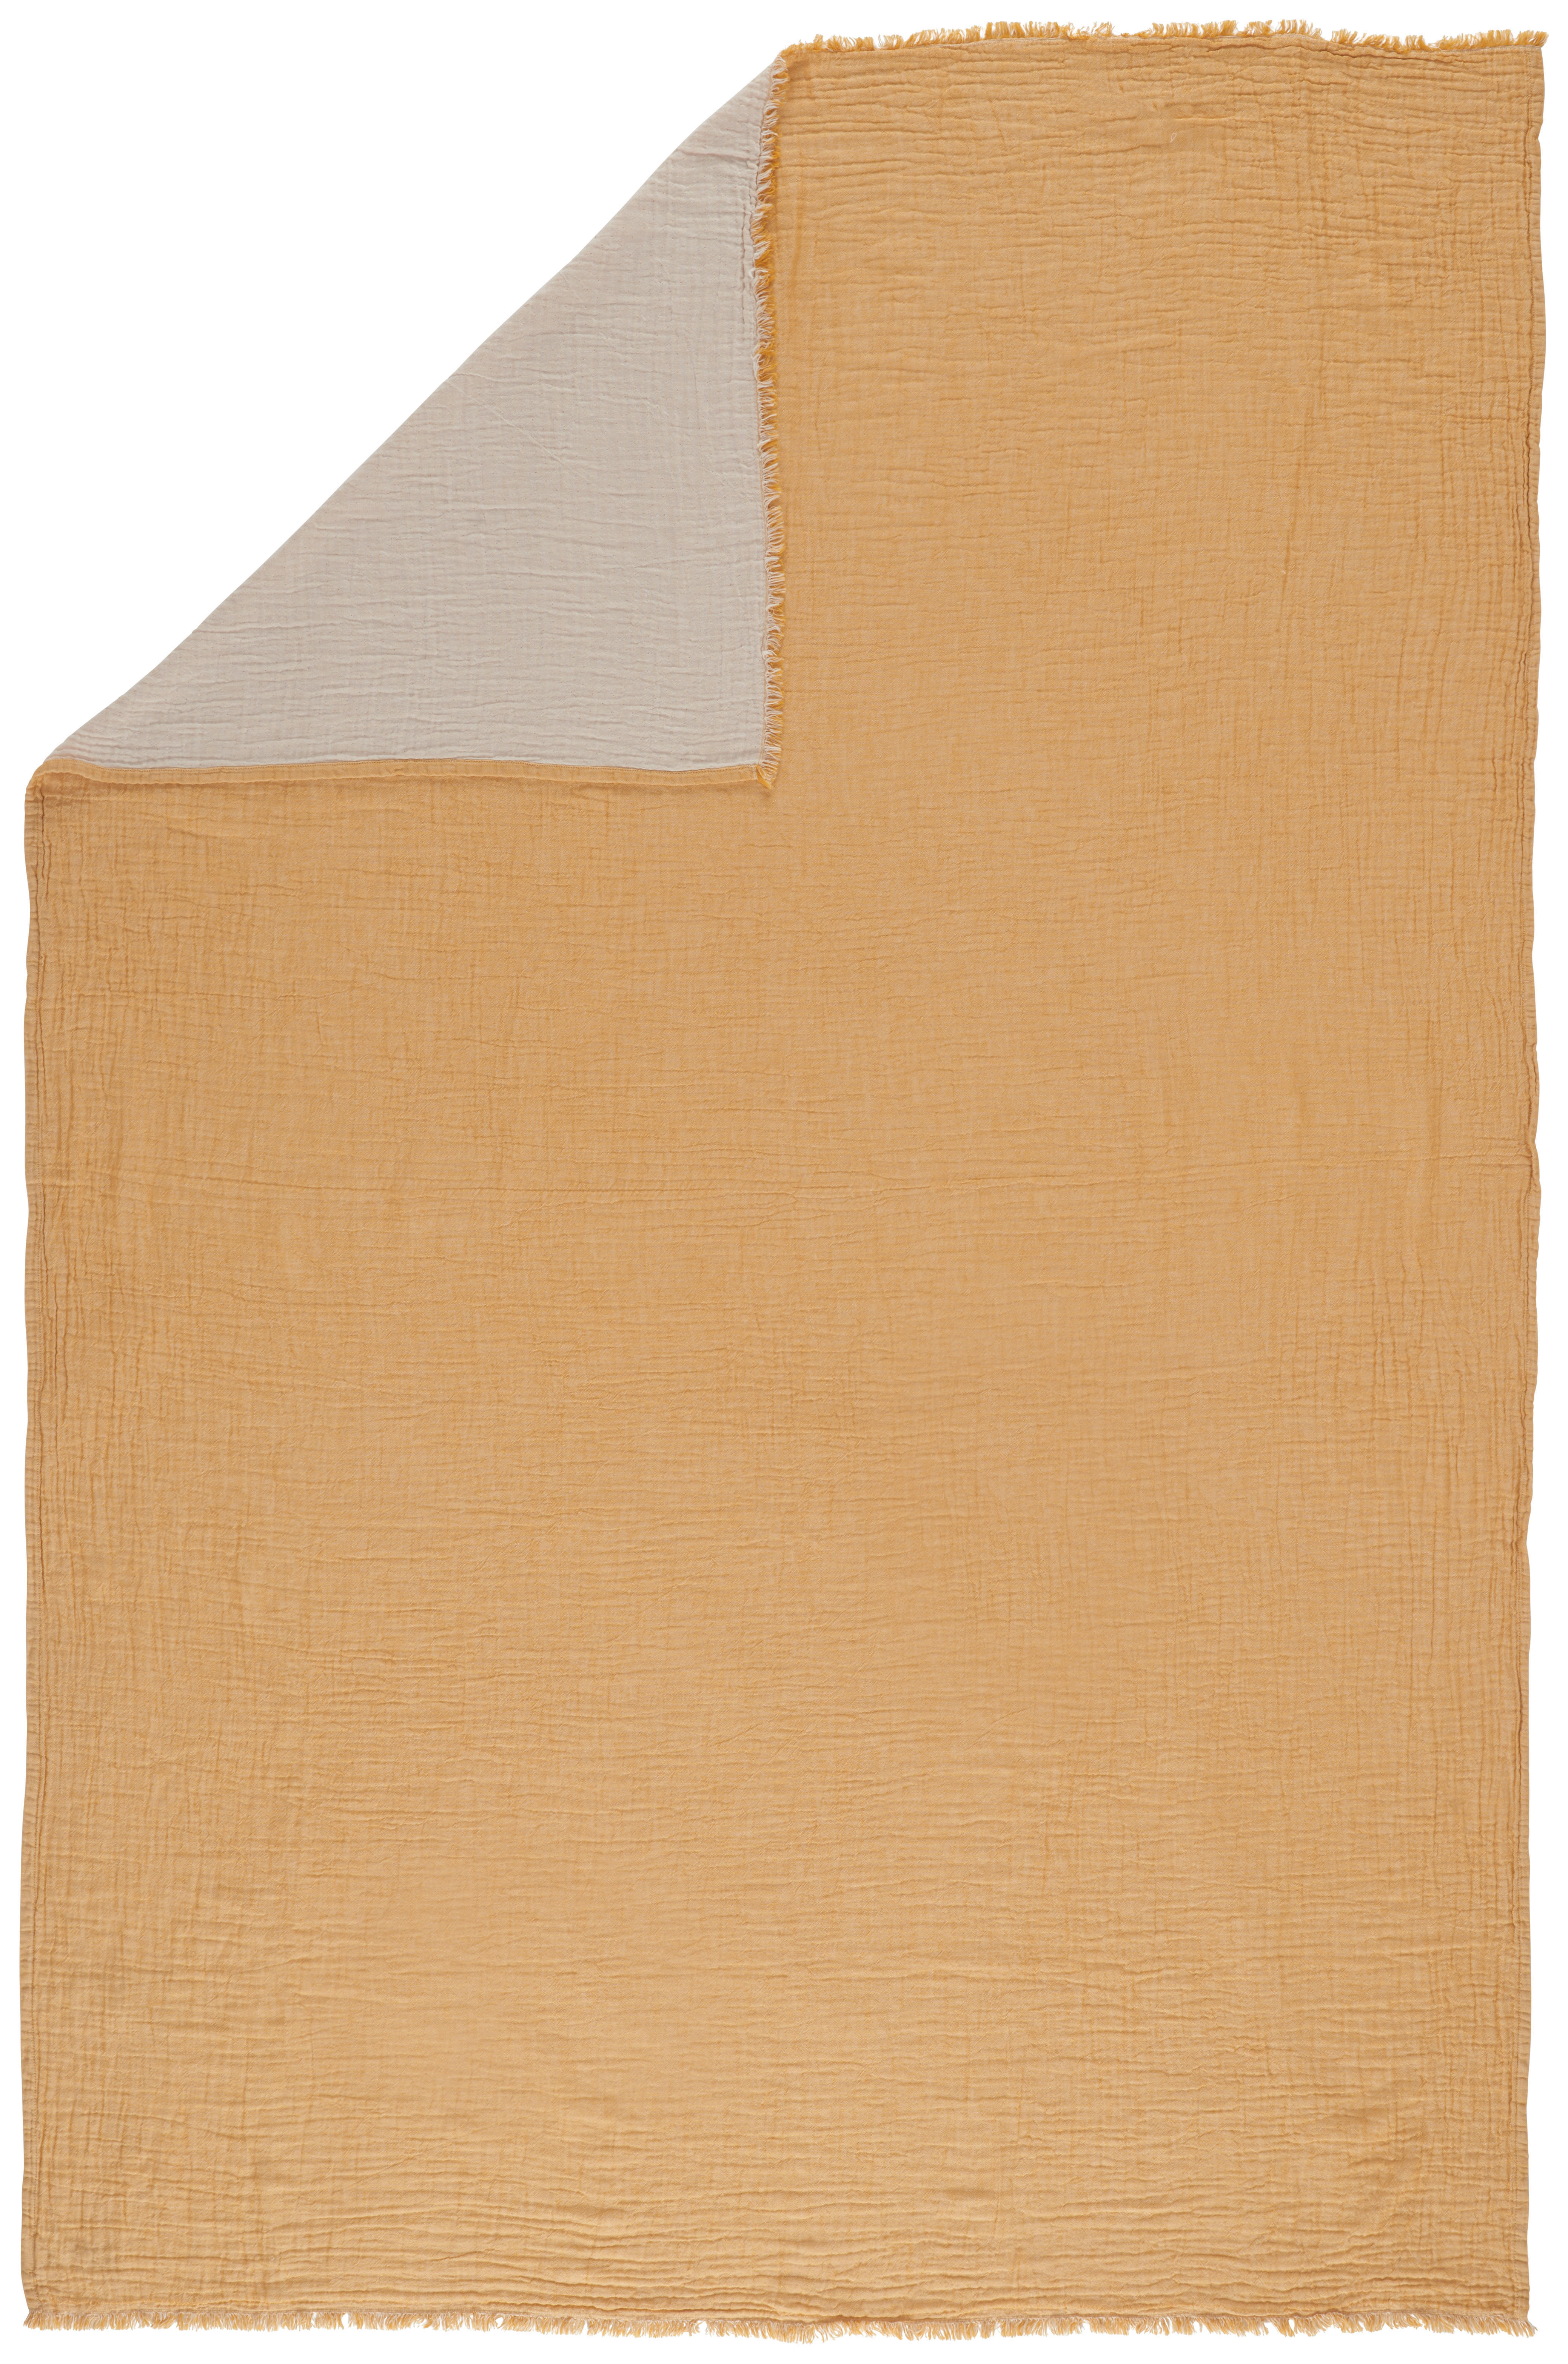 WOHNDECKE Musa 150/200 cm  - Gelb/Naturfarben, KONVENTIONELL, Textil (150/200cm) - Ambiente